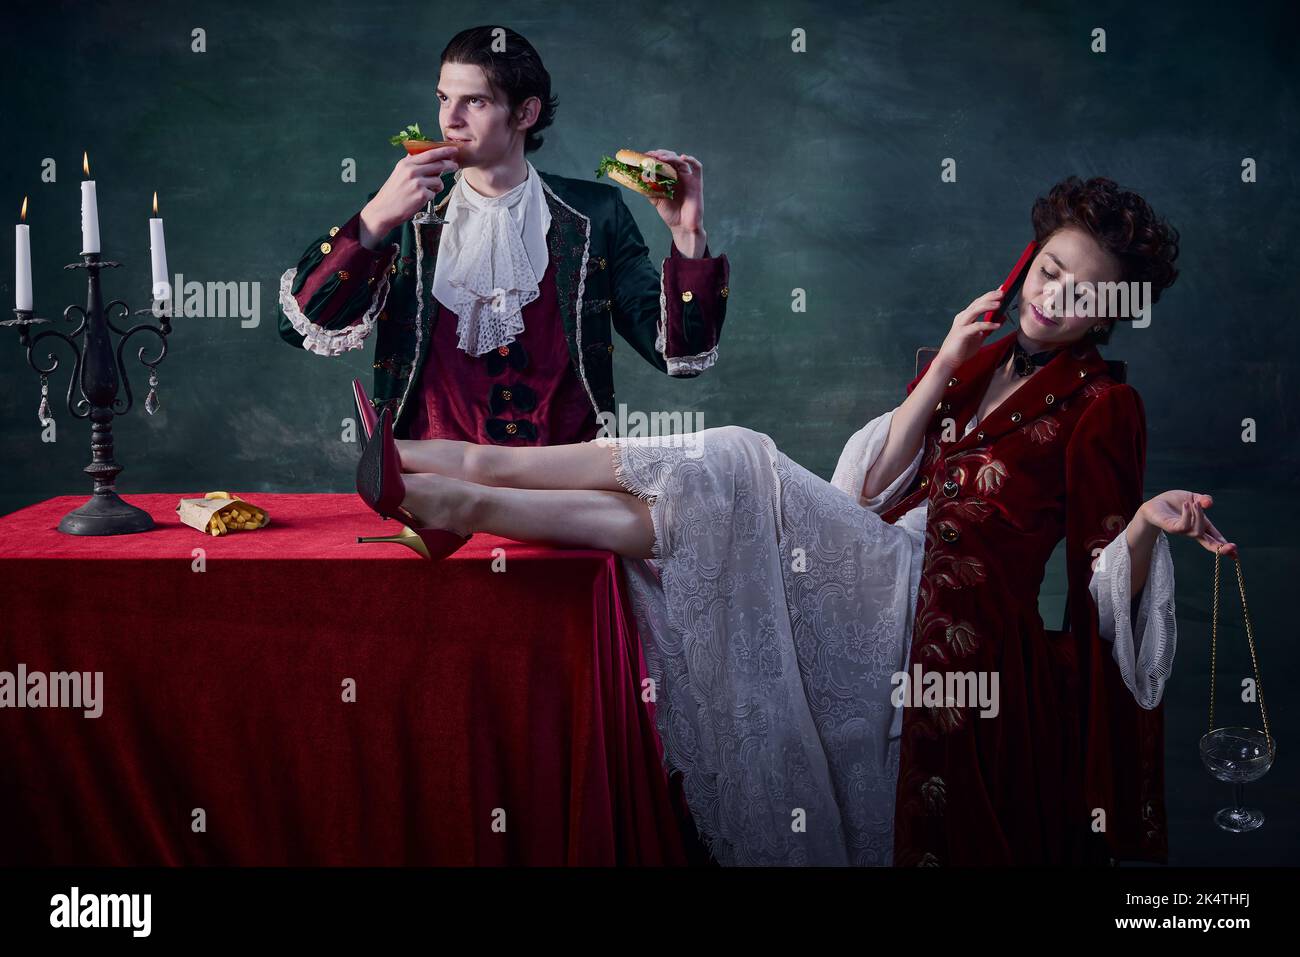 Ritratto di uomo e donna a immagine di vampiri medievali su sfondo verde scuro. Uomo che mangia hamburger e beve sanguinosa maria, donna che parla al telefono Foto Stock